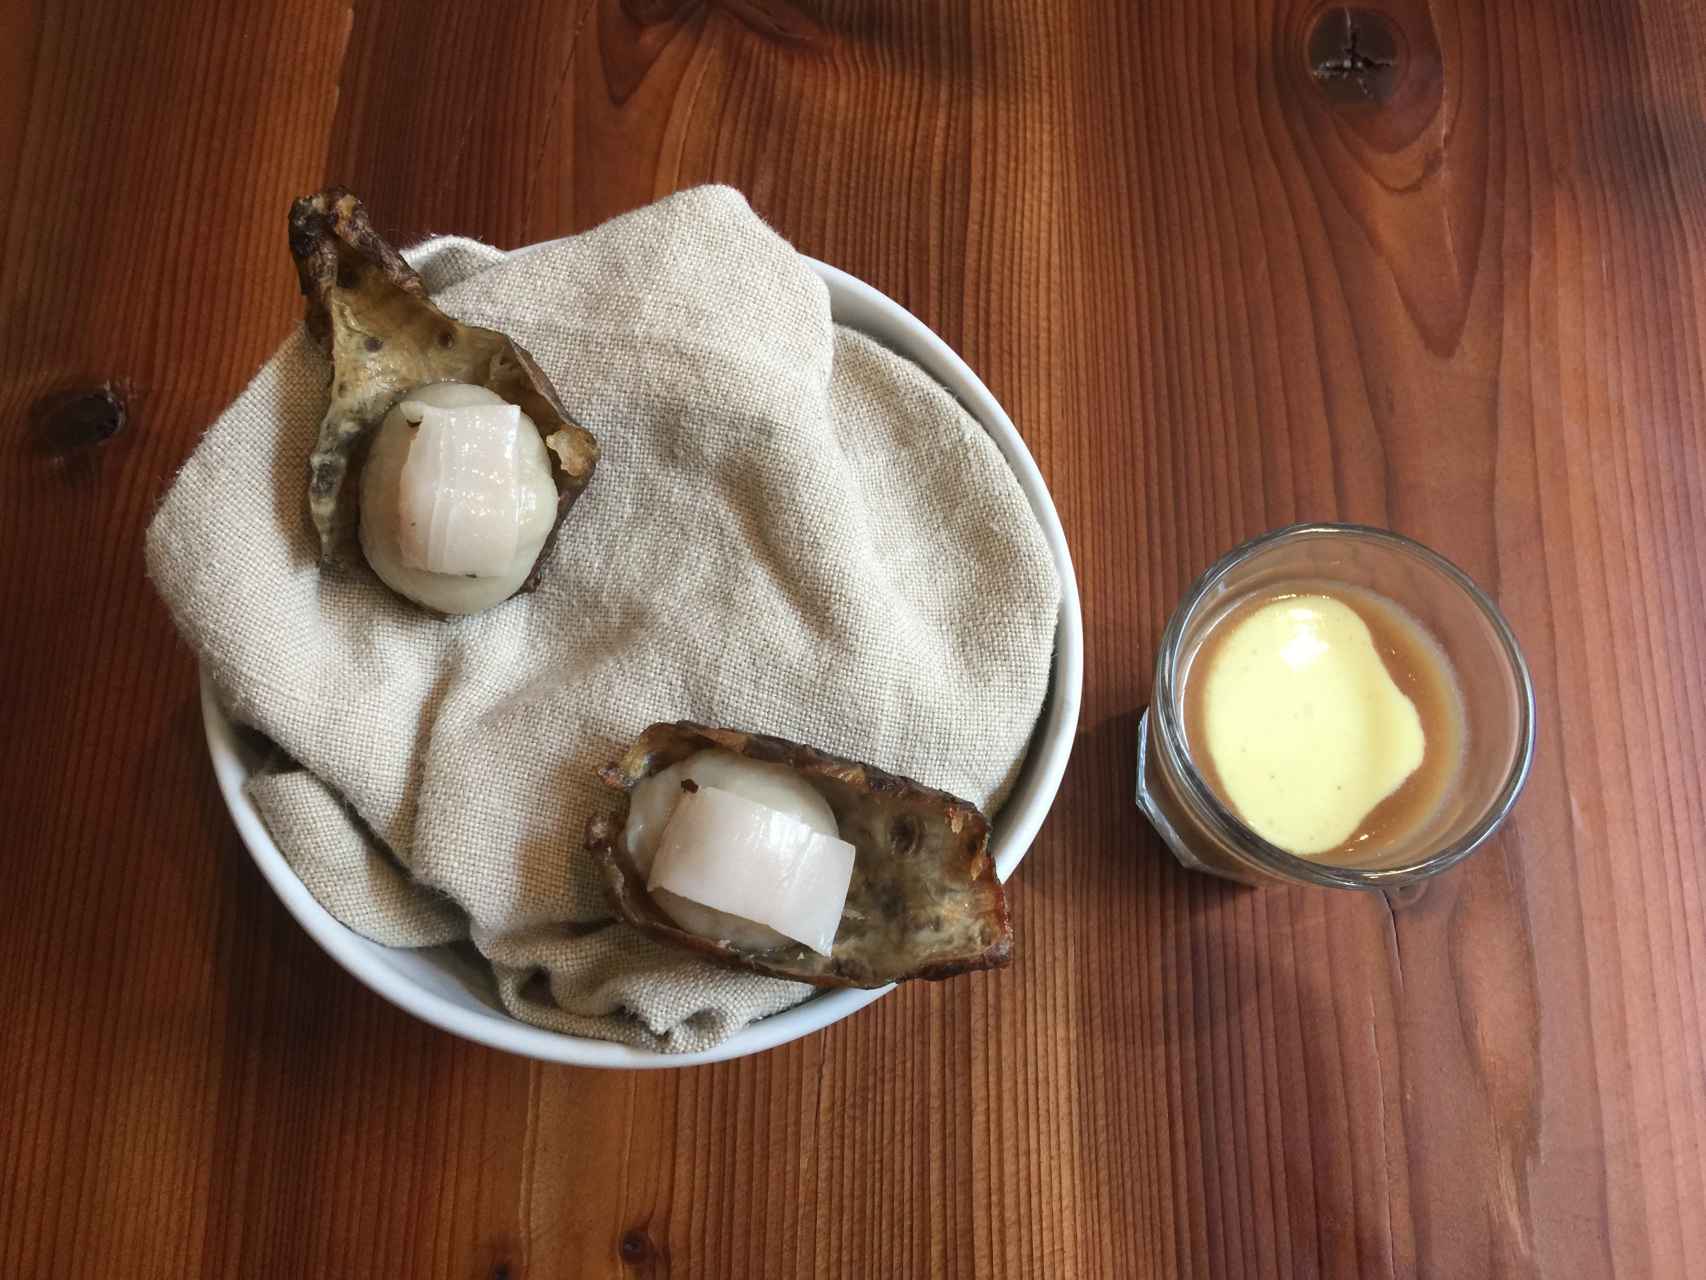 La alcachofa con chupito de cebolla.